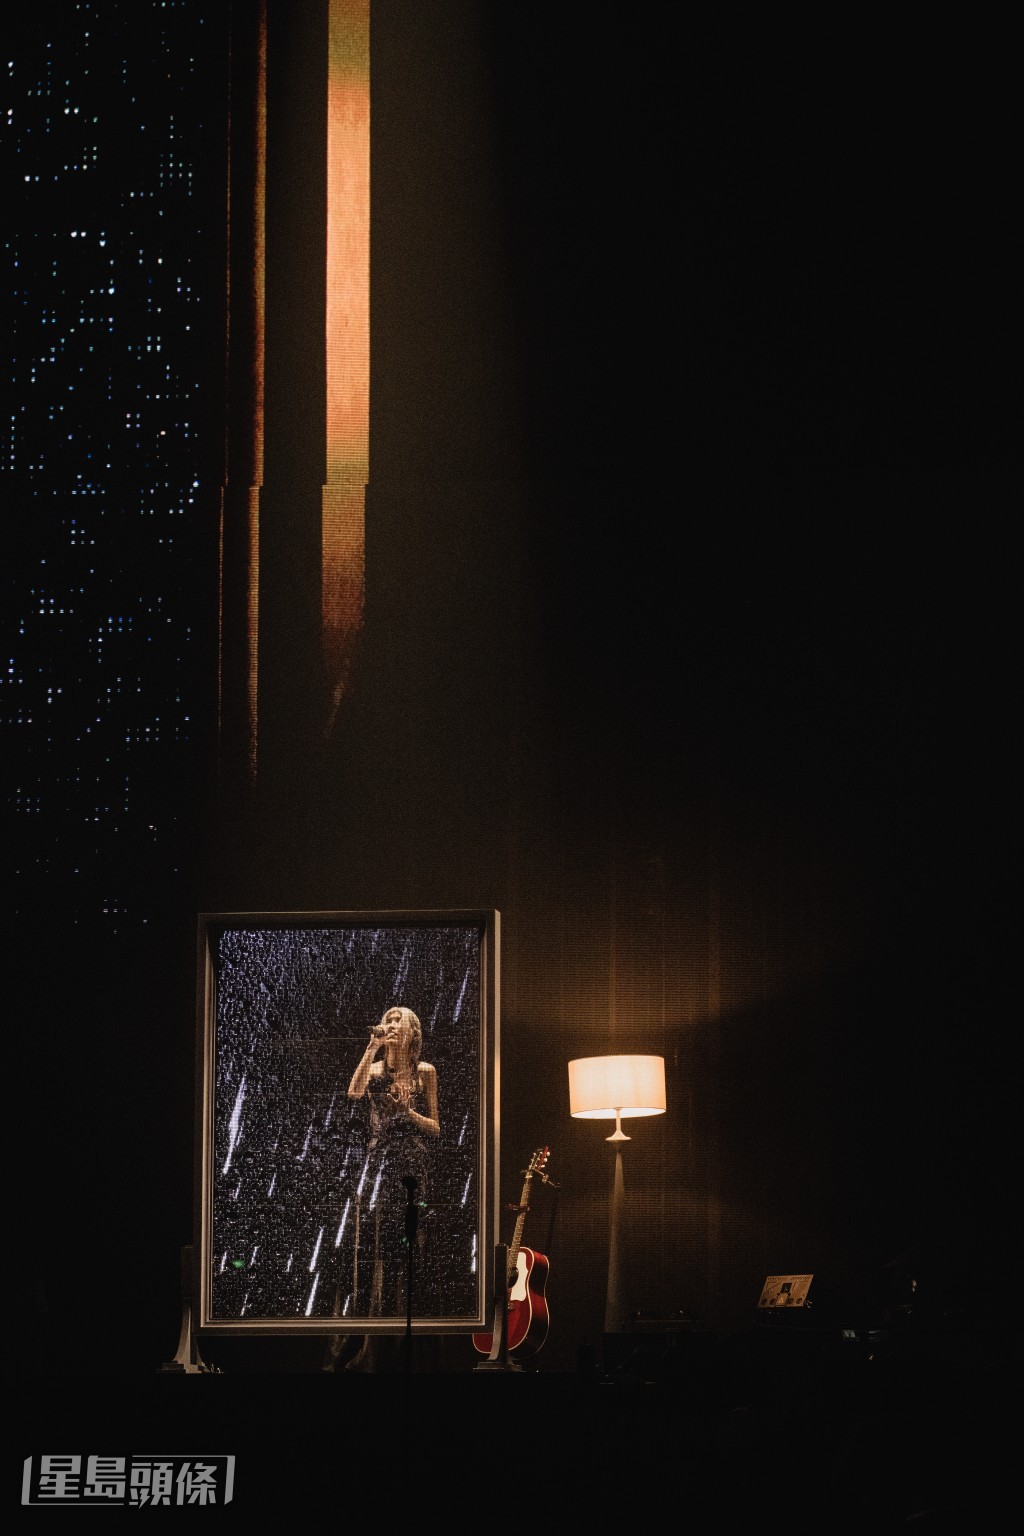 陳蕾站在彷如受盡雨水擊打的鏡子前唱出《當我迷失時聽著的歌》。